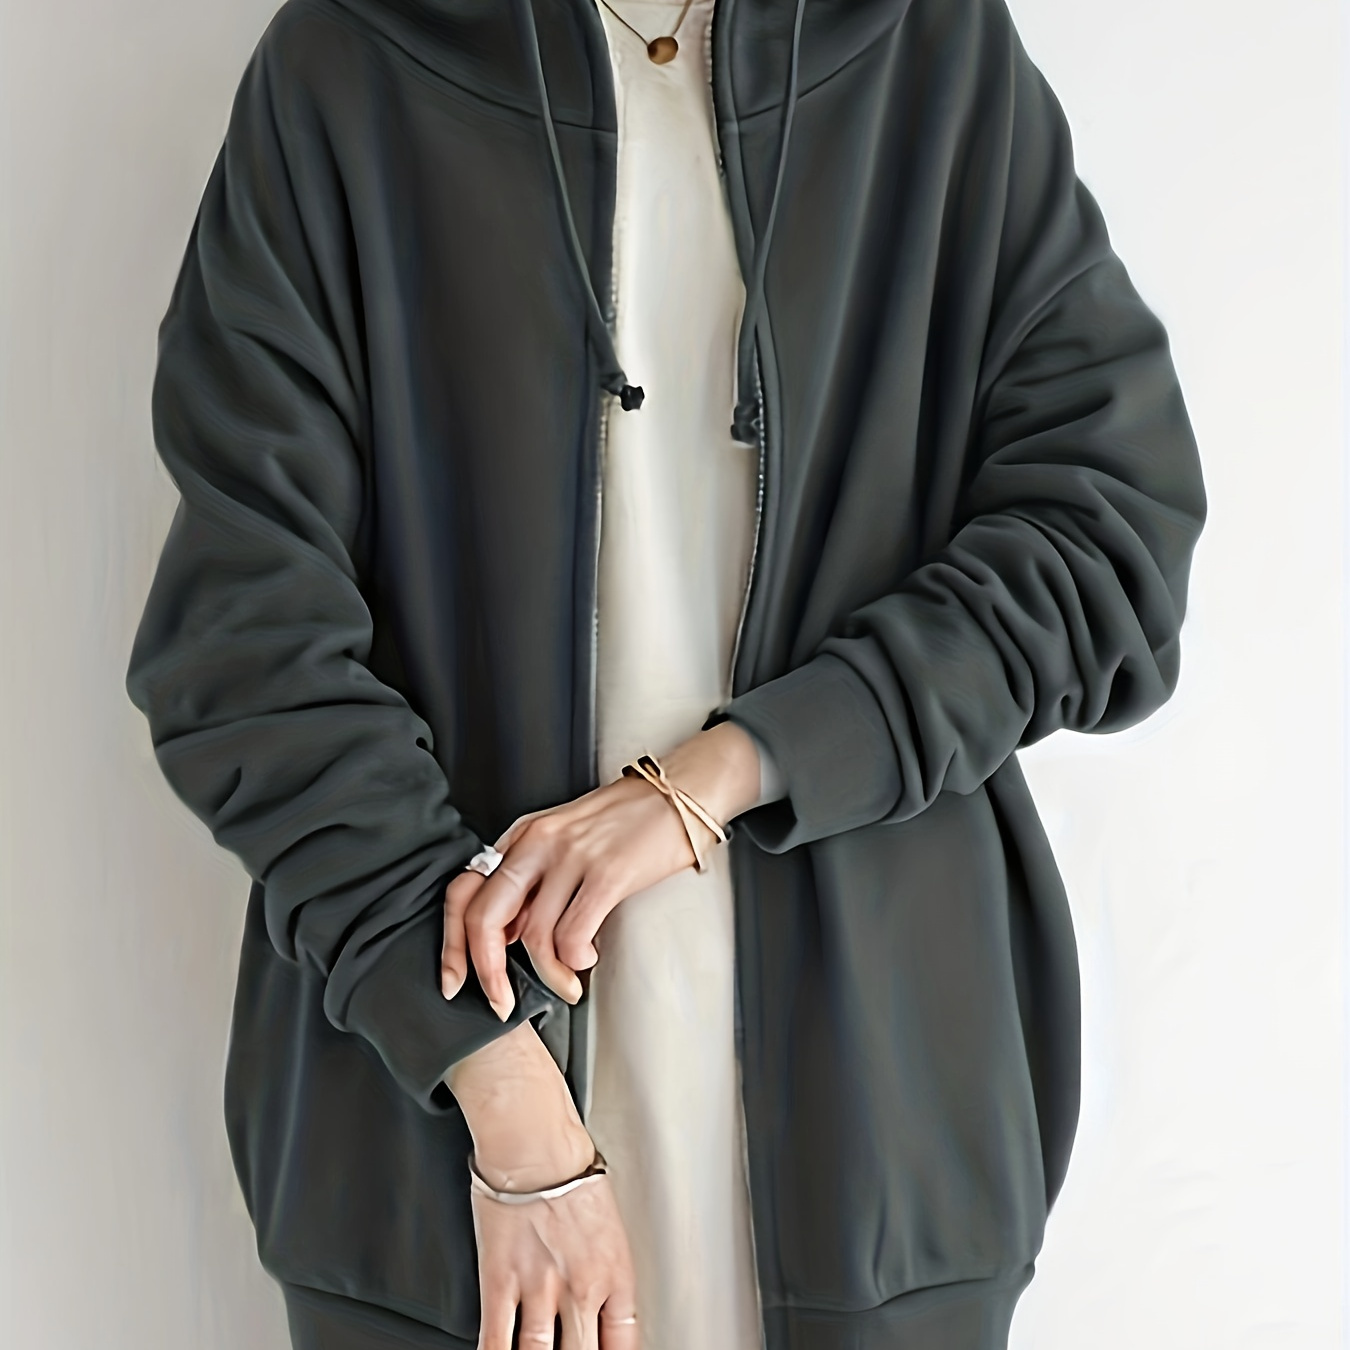 Yyeselk Women's Solid Jacket Plus Fleece Pocket Hooded Zipper Mid